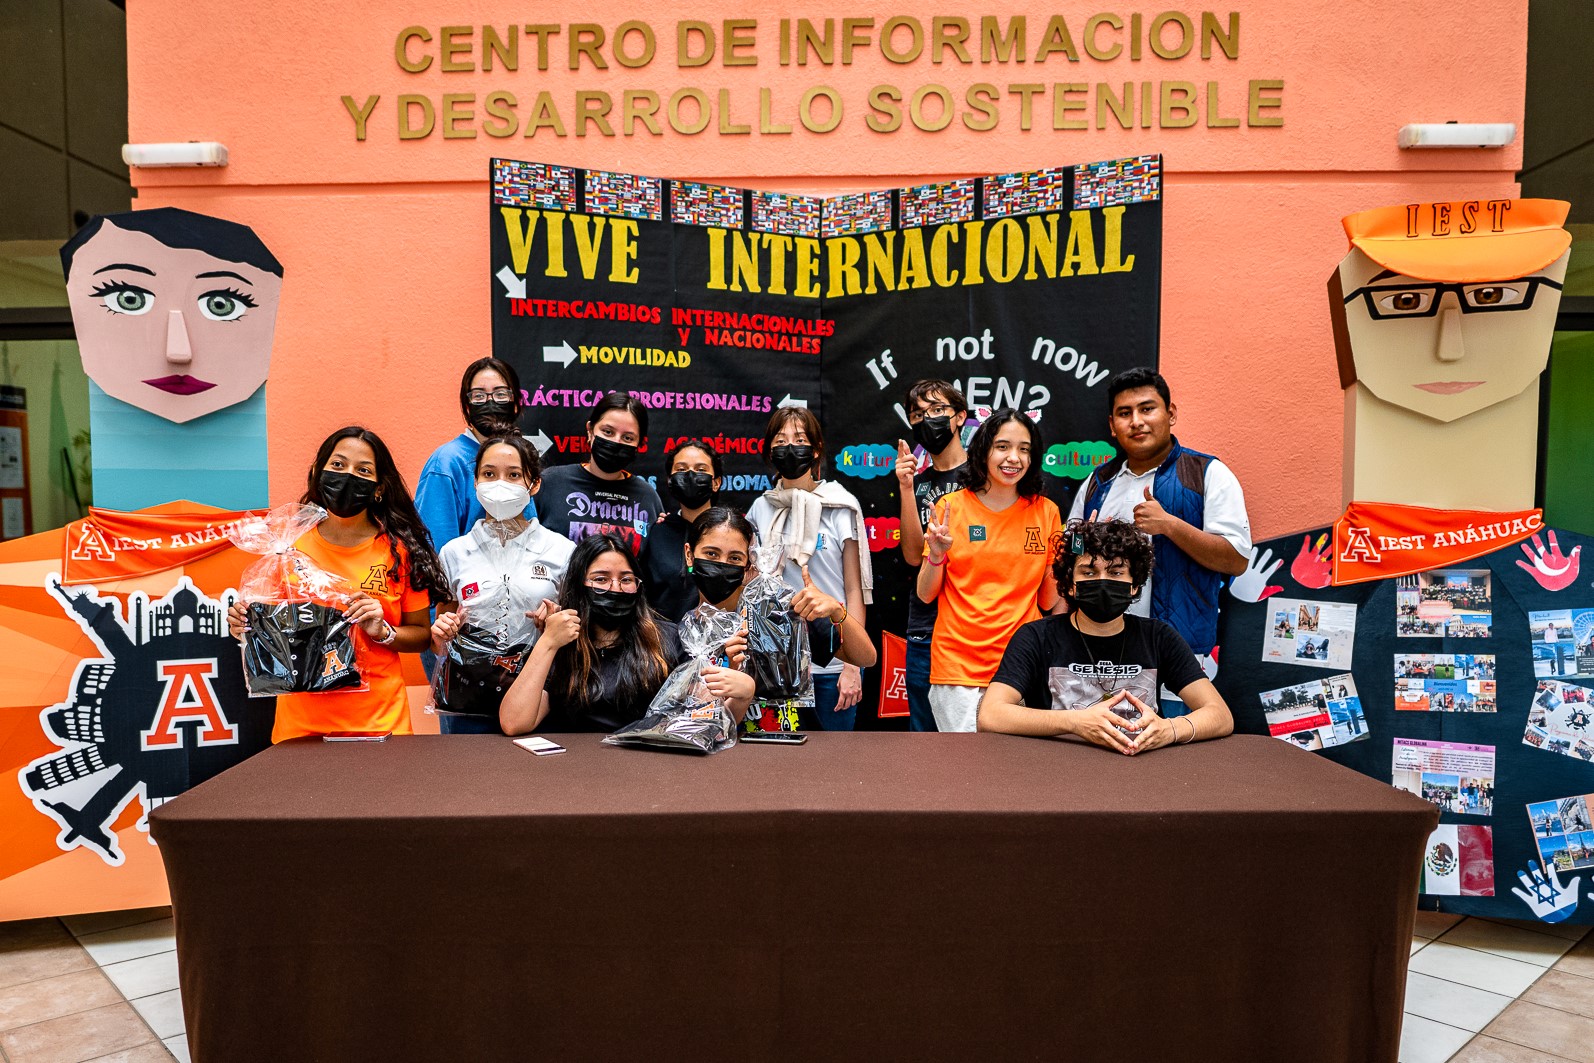 Alumnos del rally posando en el stand de VIVE INTERNACIONAL.